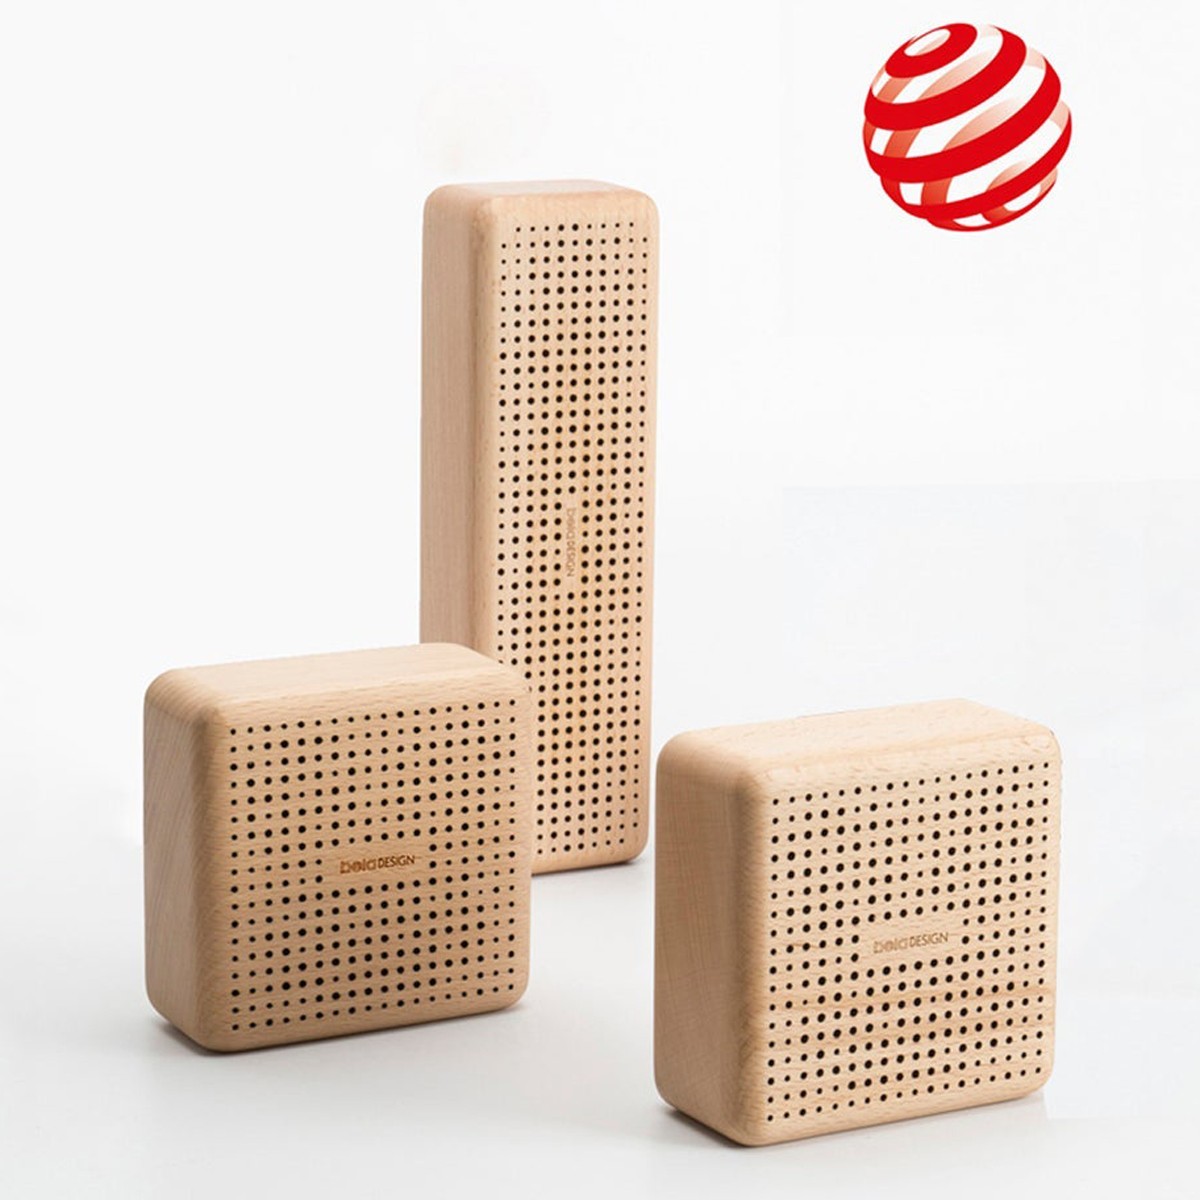 Democratie Veilig min Award Winning Bluetooth Speaker - R1 - DecentLiving